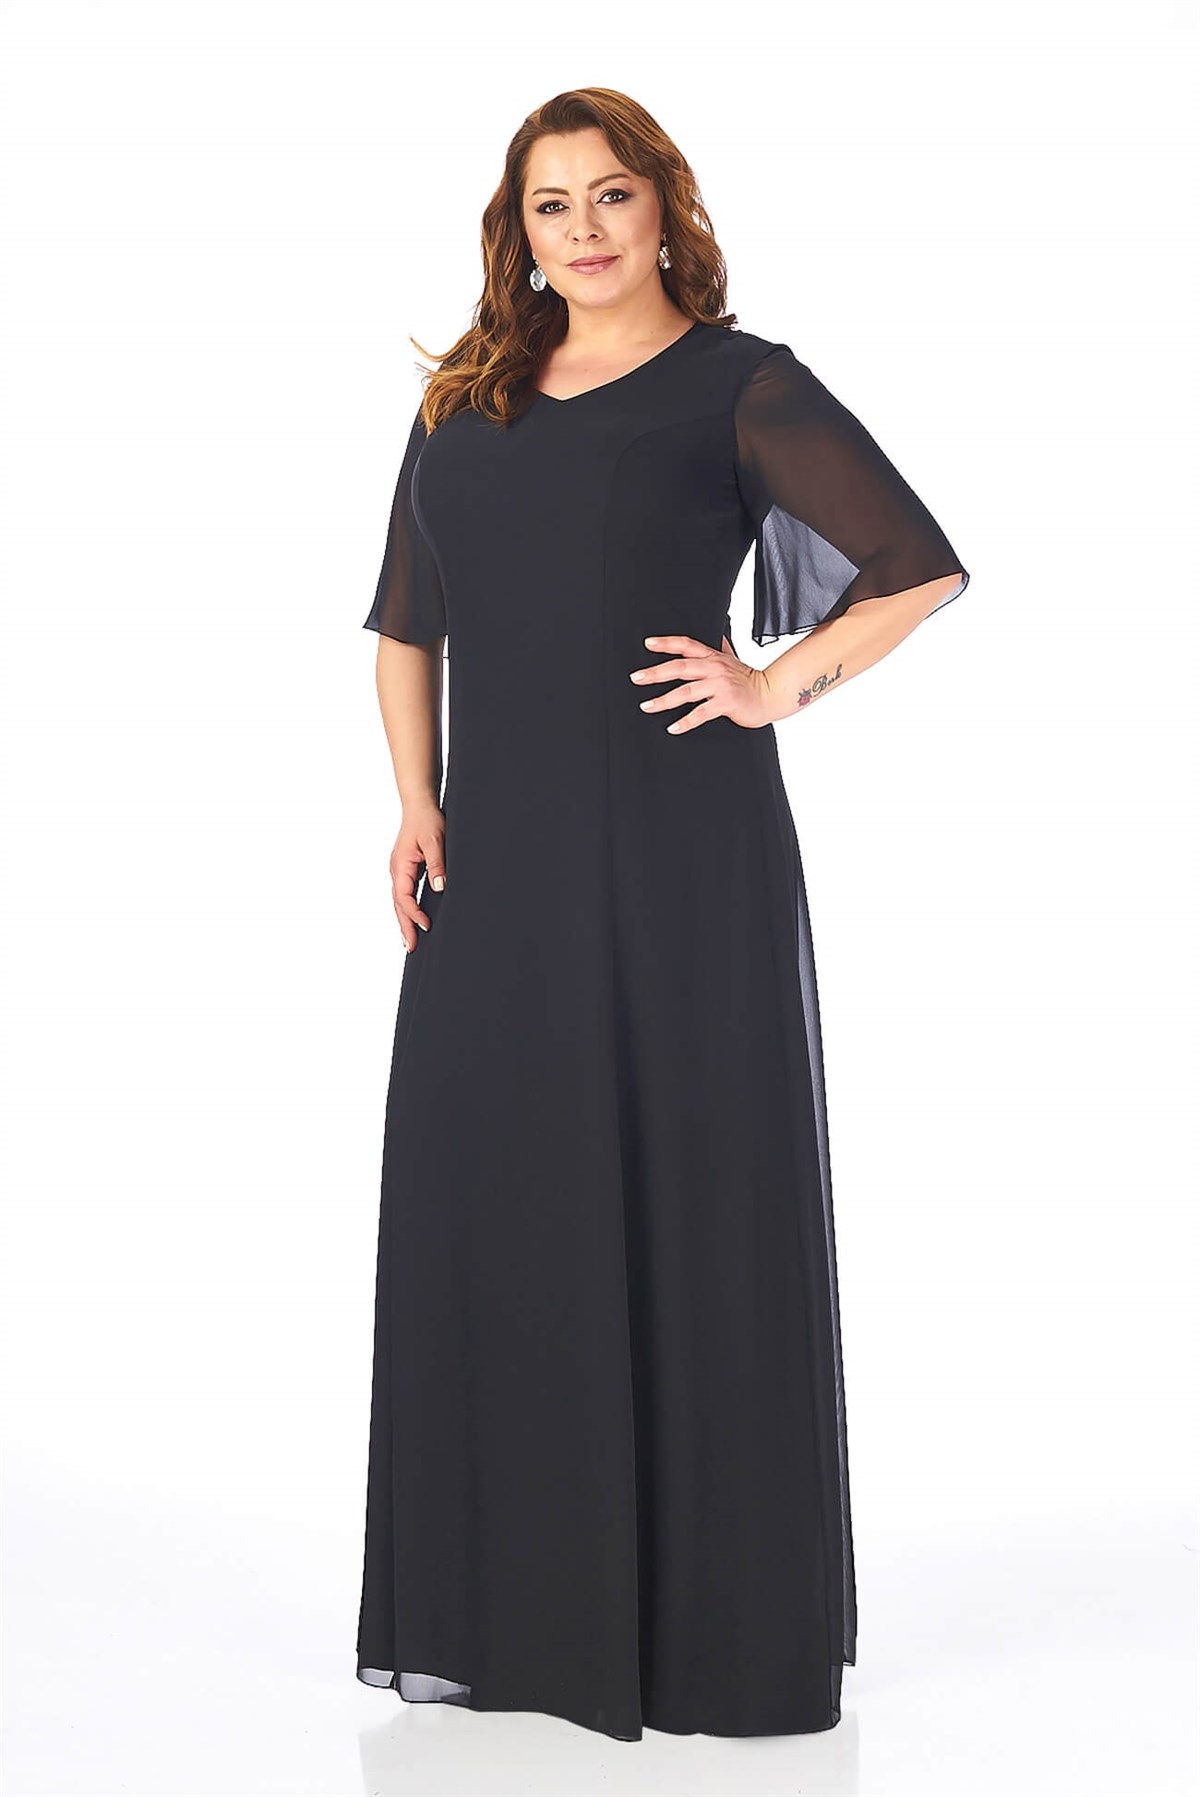 Büyük Beden Siyah Renkli Uzun Şifon Elbise - LilasXXL